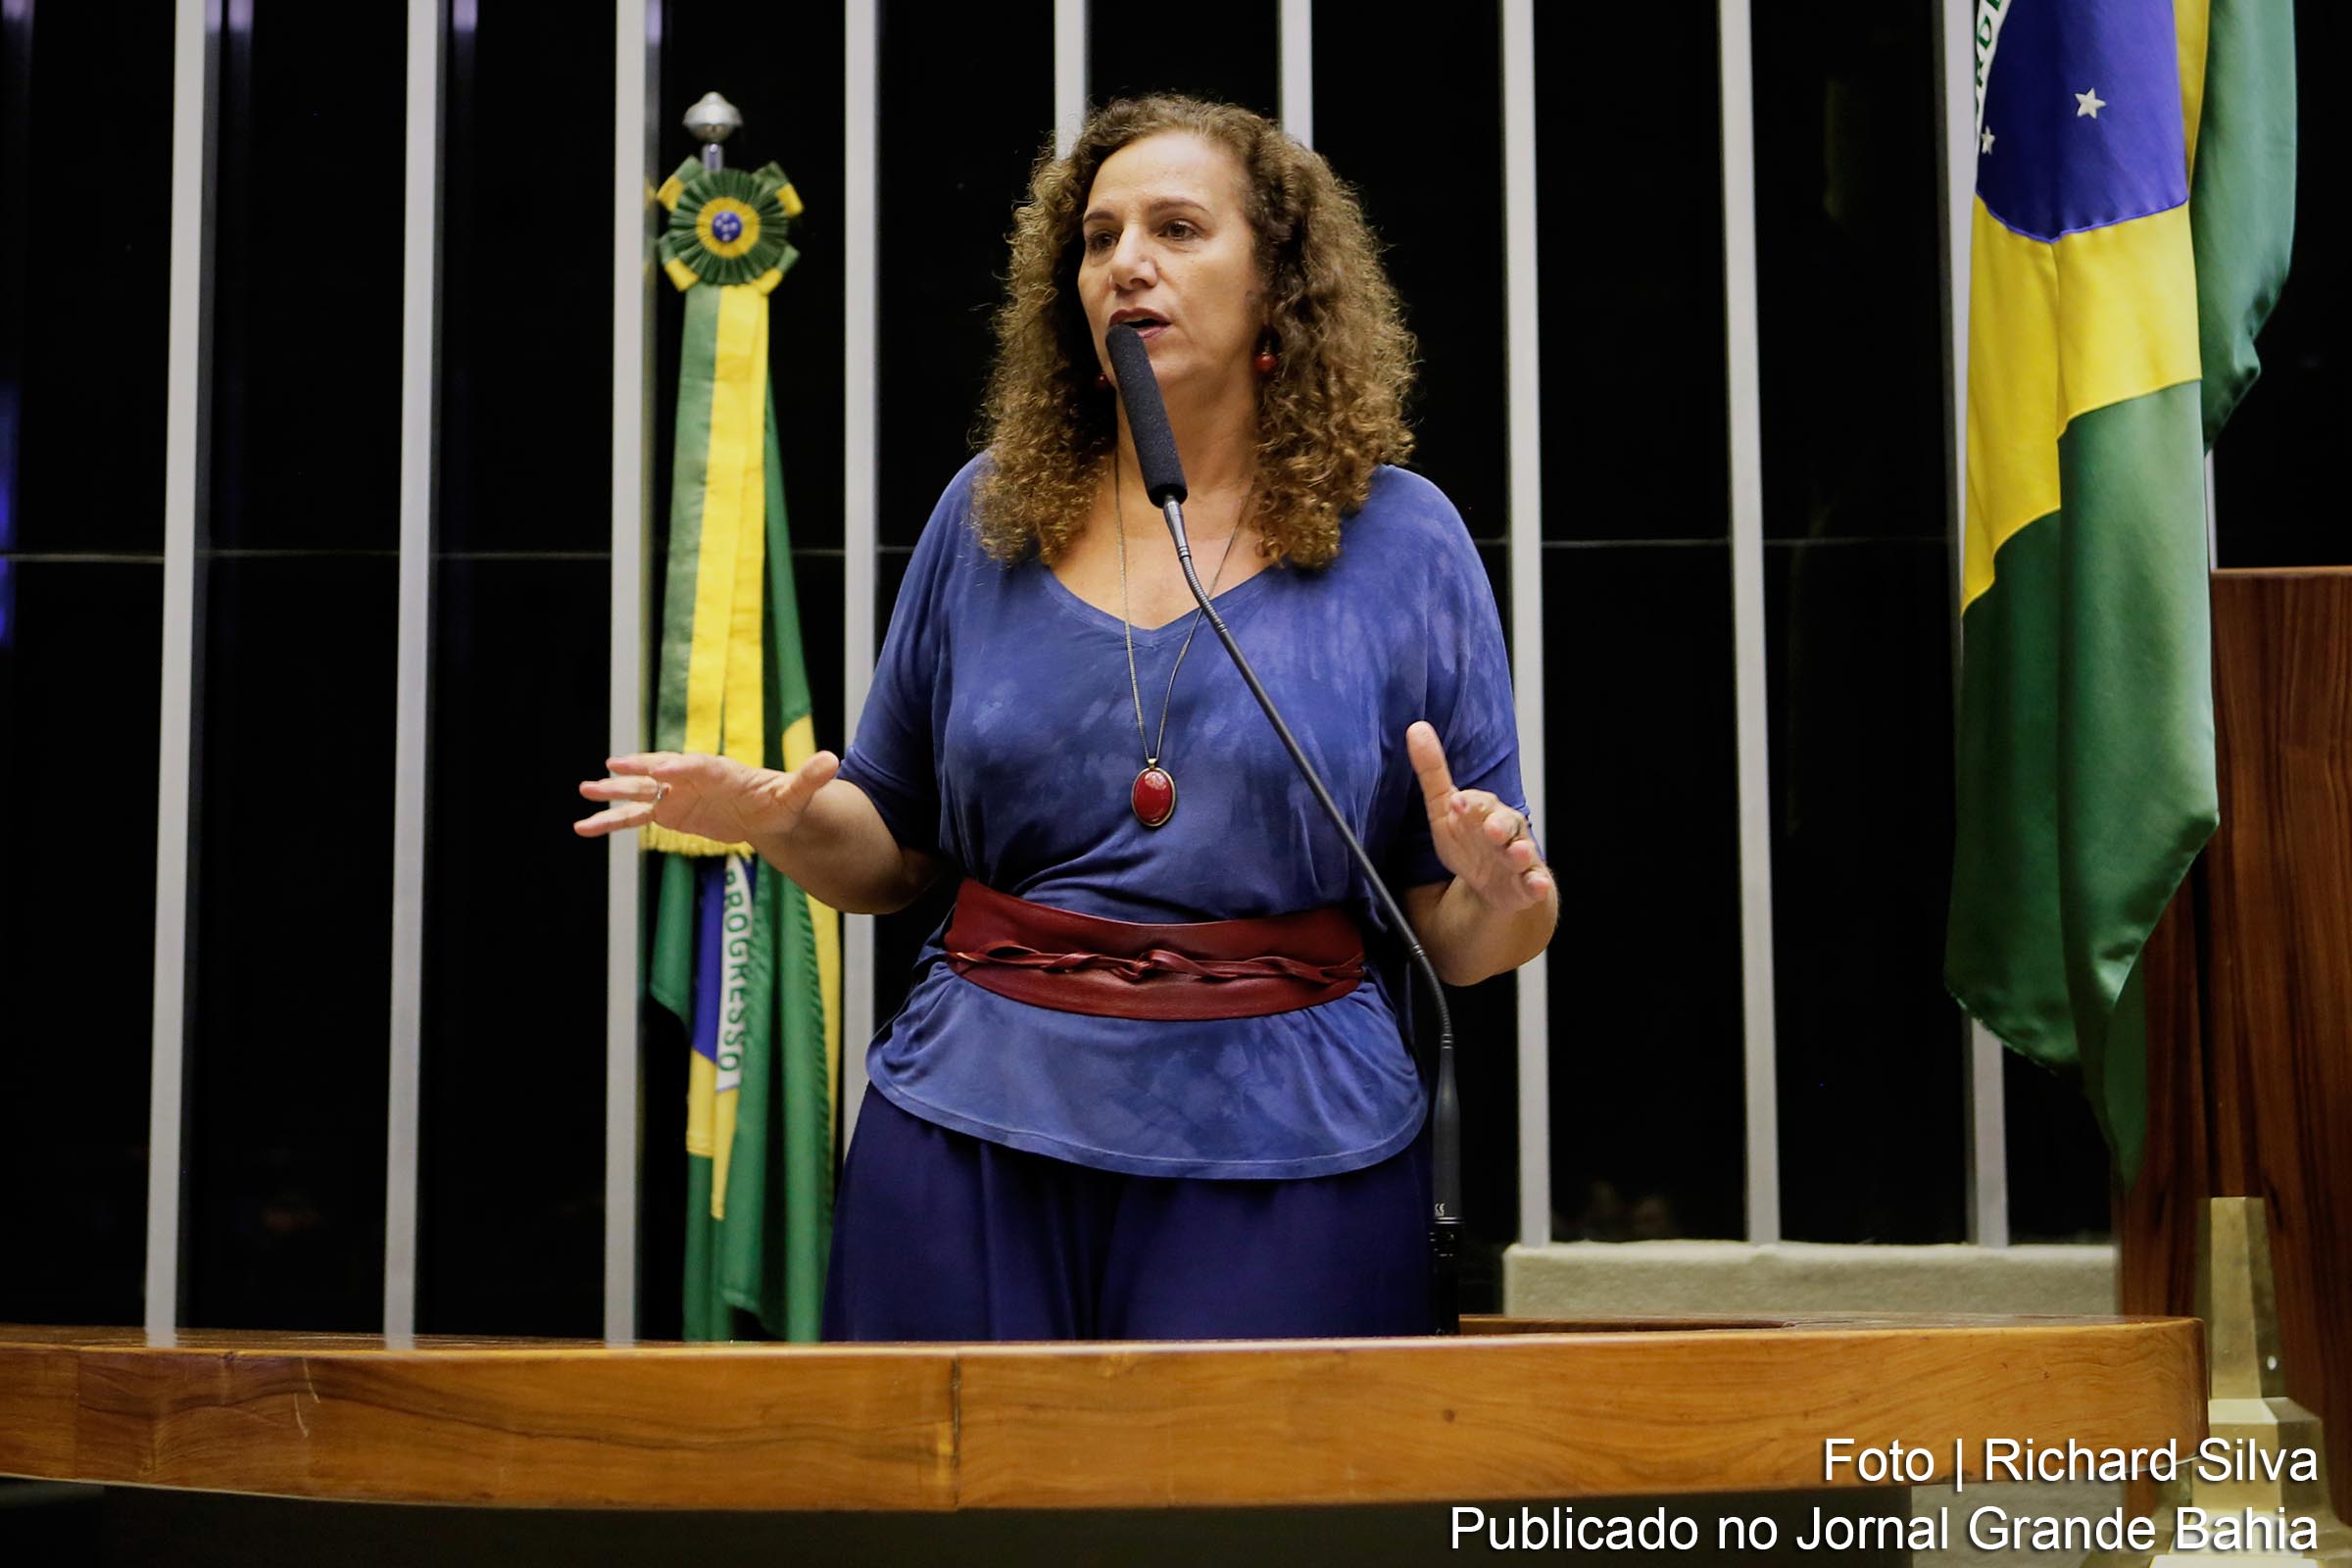 Jandira Feghali é uma médica e política brasileira filiada ao Partido Comunista do Brasil, atual líder da minoria na Câmara dos Deputados. Construiu sua carreira política pelo estado do Rio de Janeiro. É irmã do pianista e tecladista Ricardo Feghali e tem dois filhos.